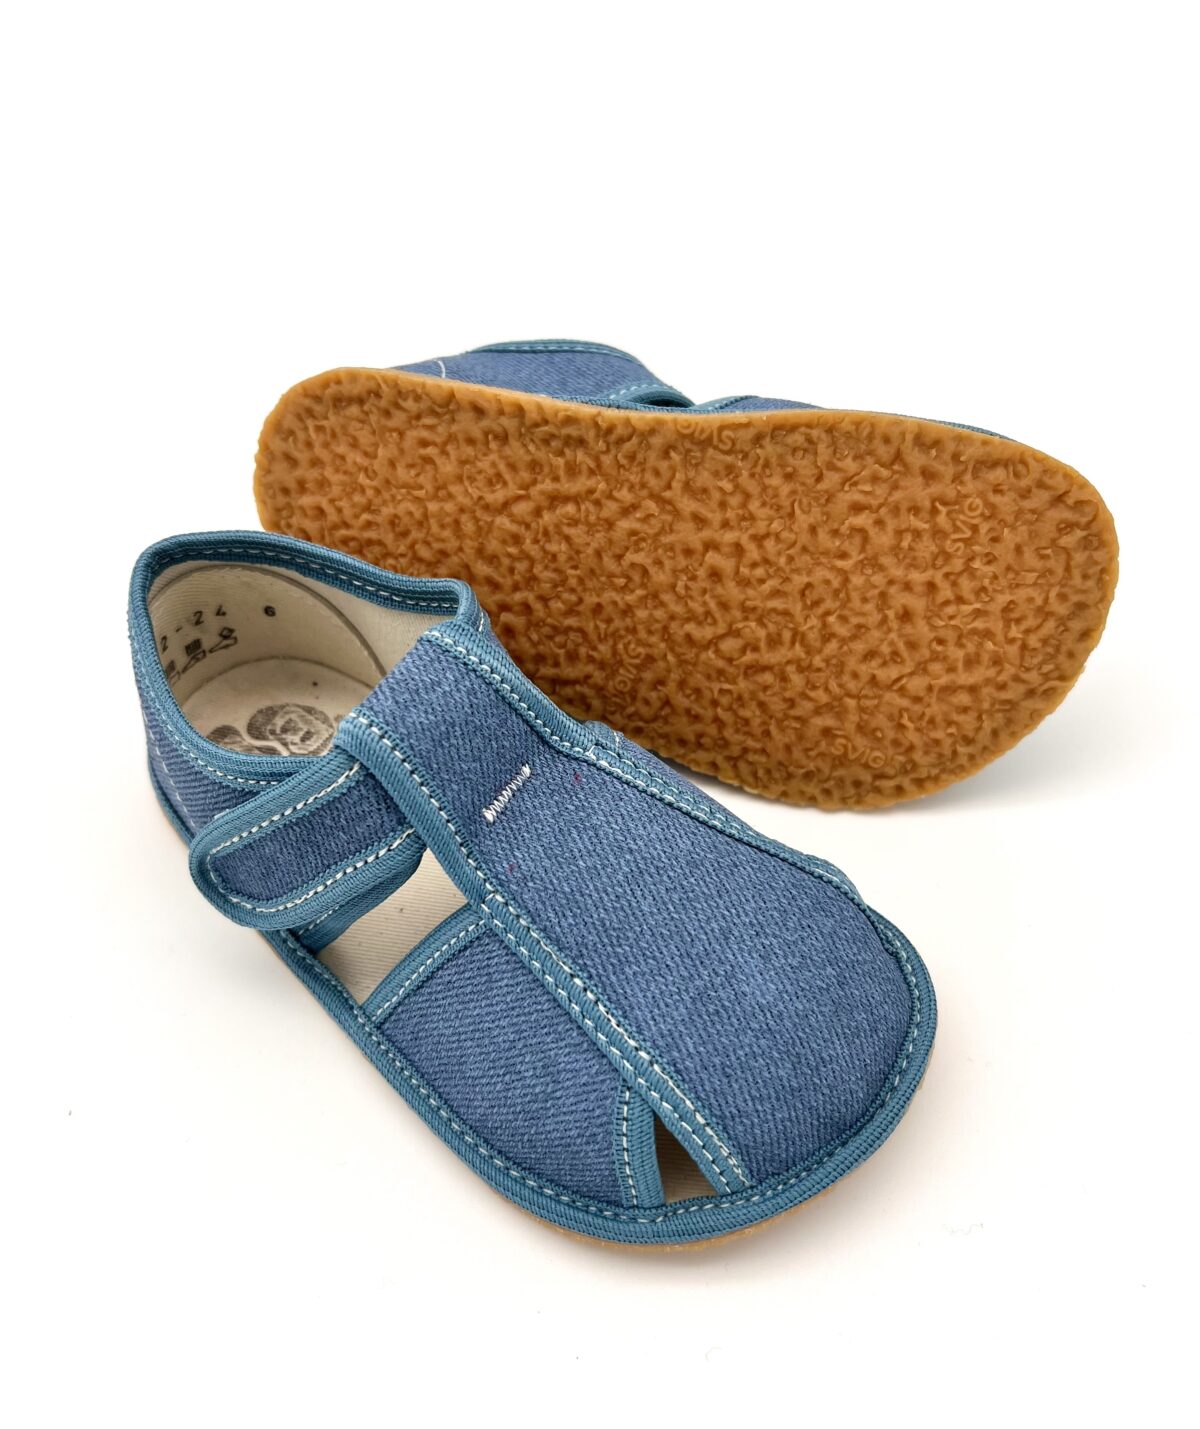 Baby Bare sisejalatsid Denim Laste barefoot jalatsid - HellyK - Kvaliteetsed lasteriided, villariided, barefoot jalatsid